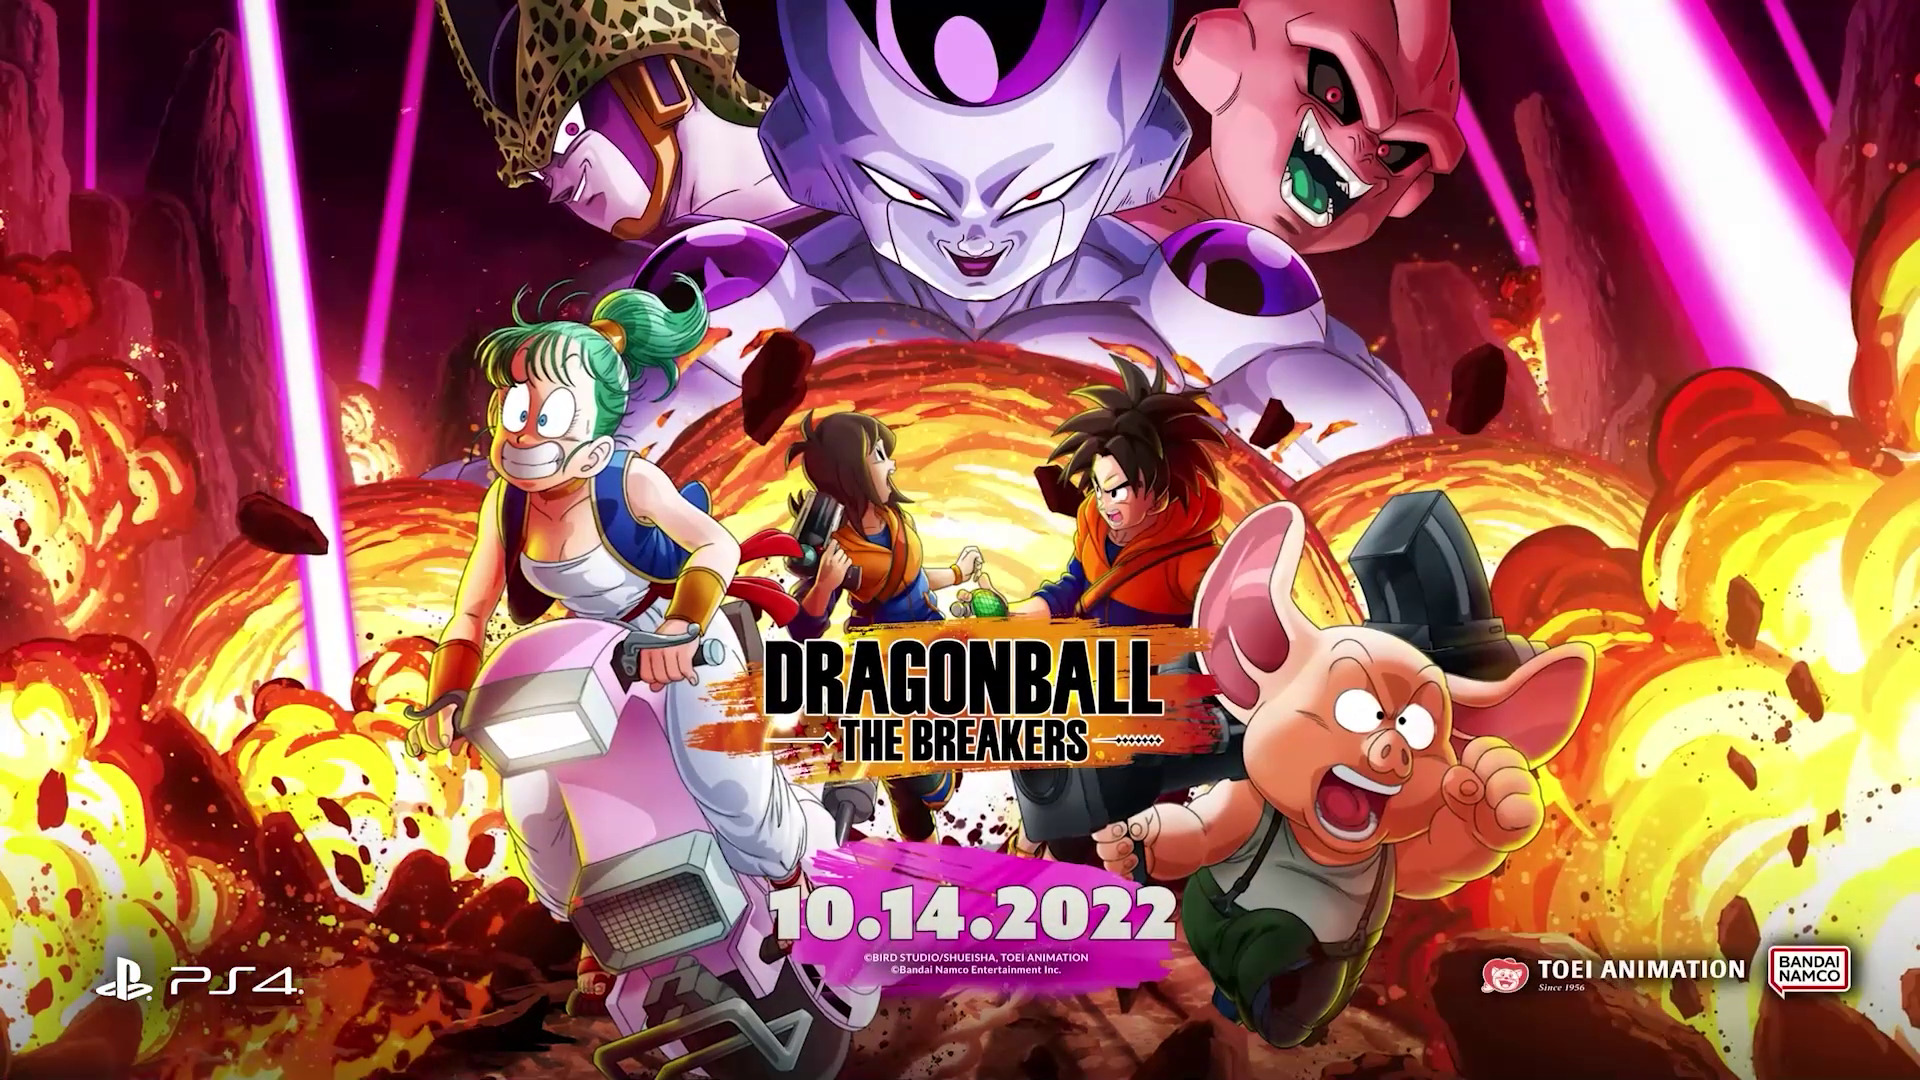 The Breakers - Multiplayer Assimétrico de Dragon Ball Chega em Outubro